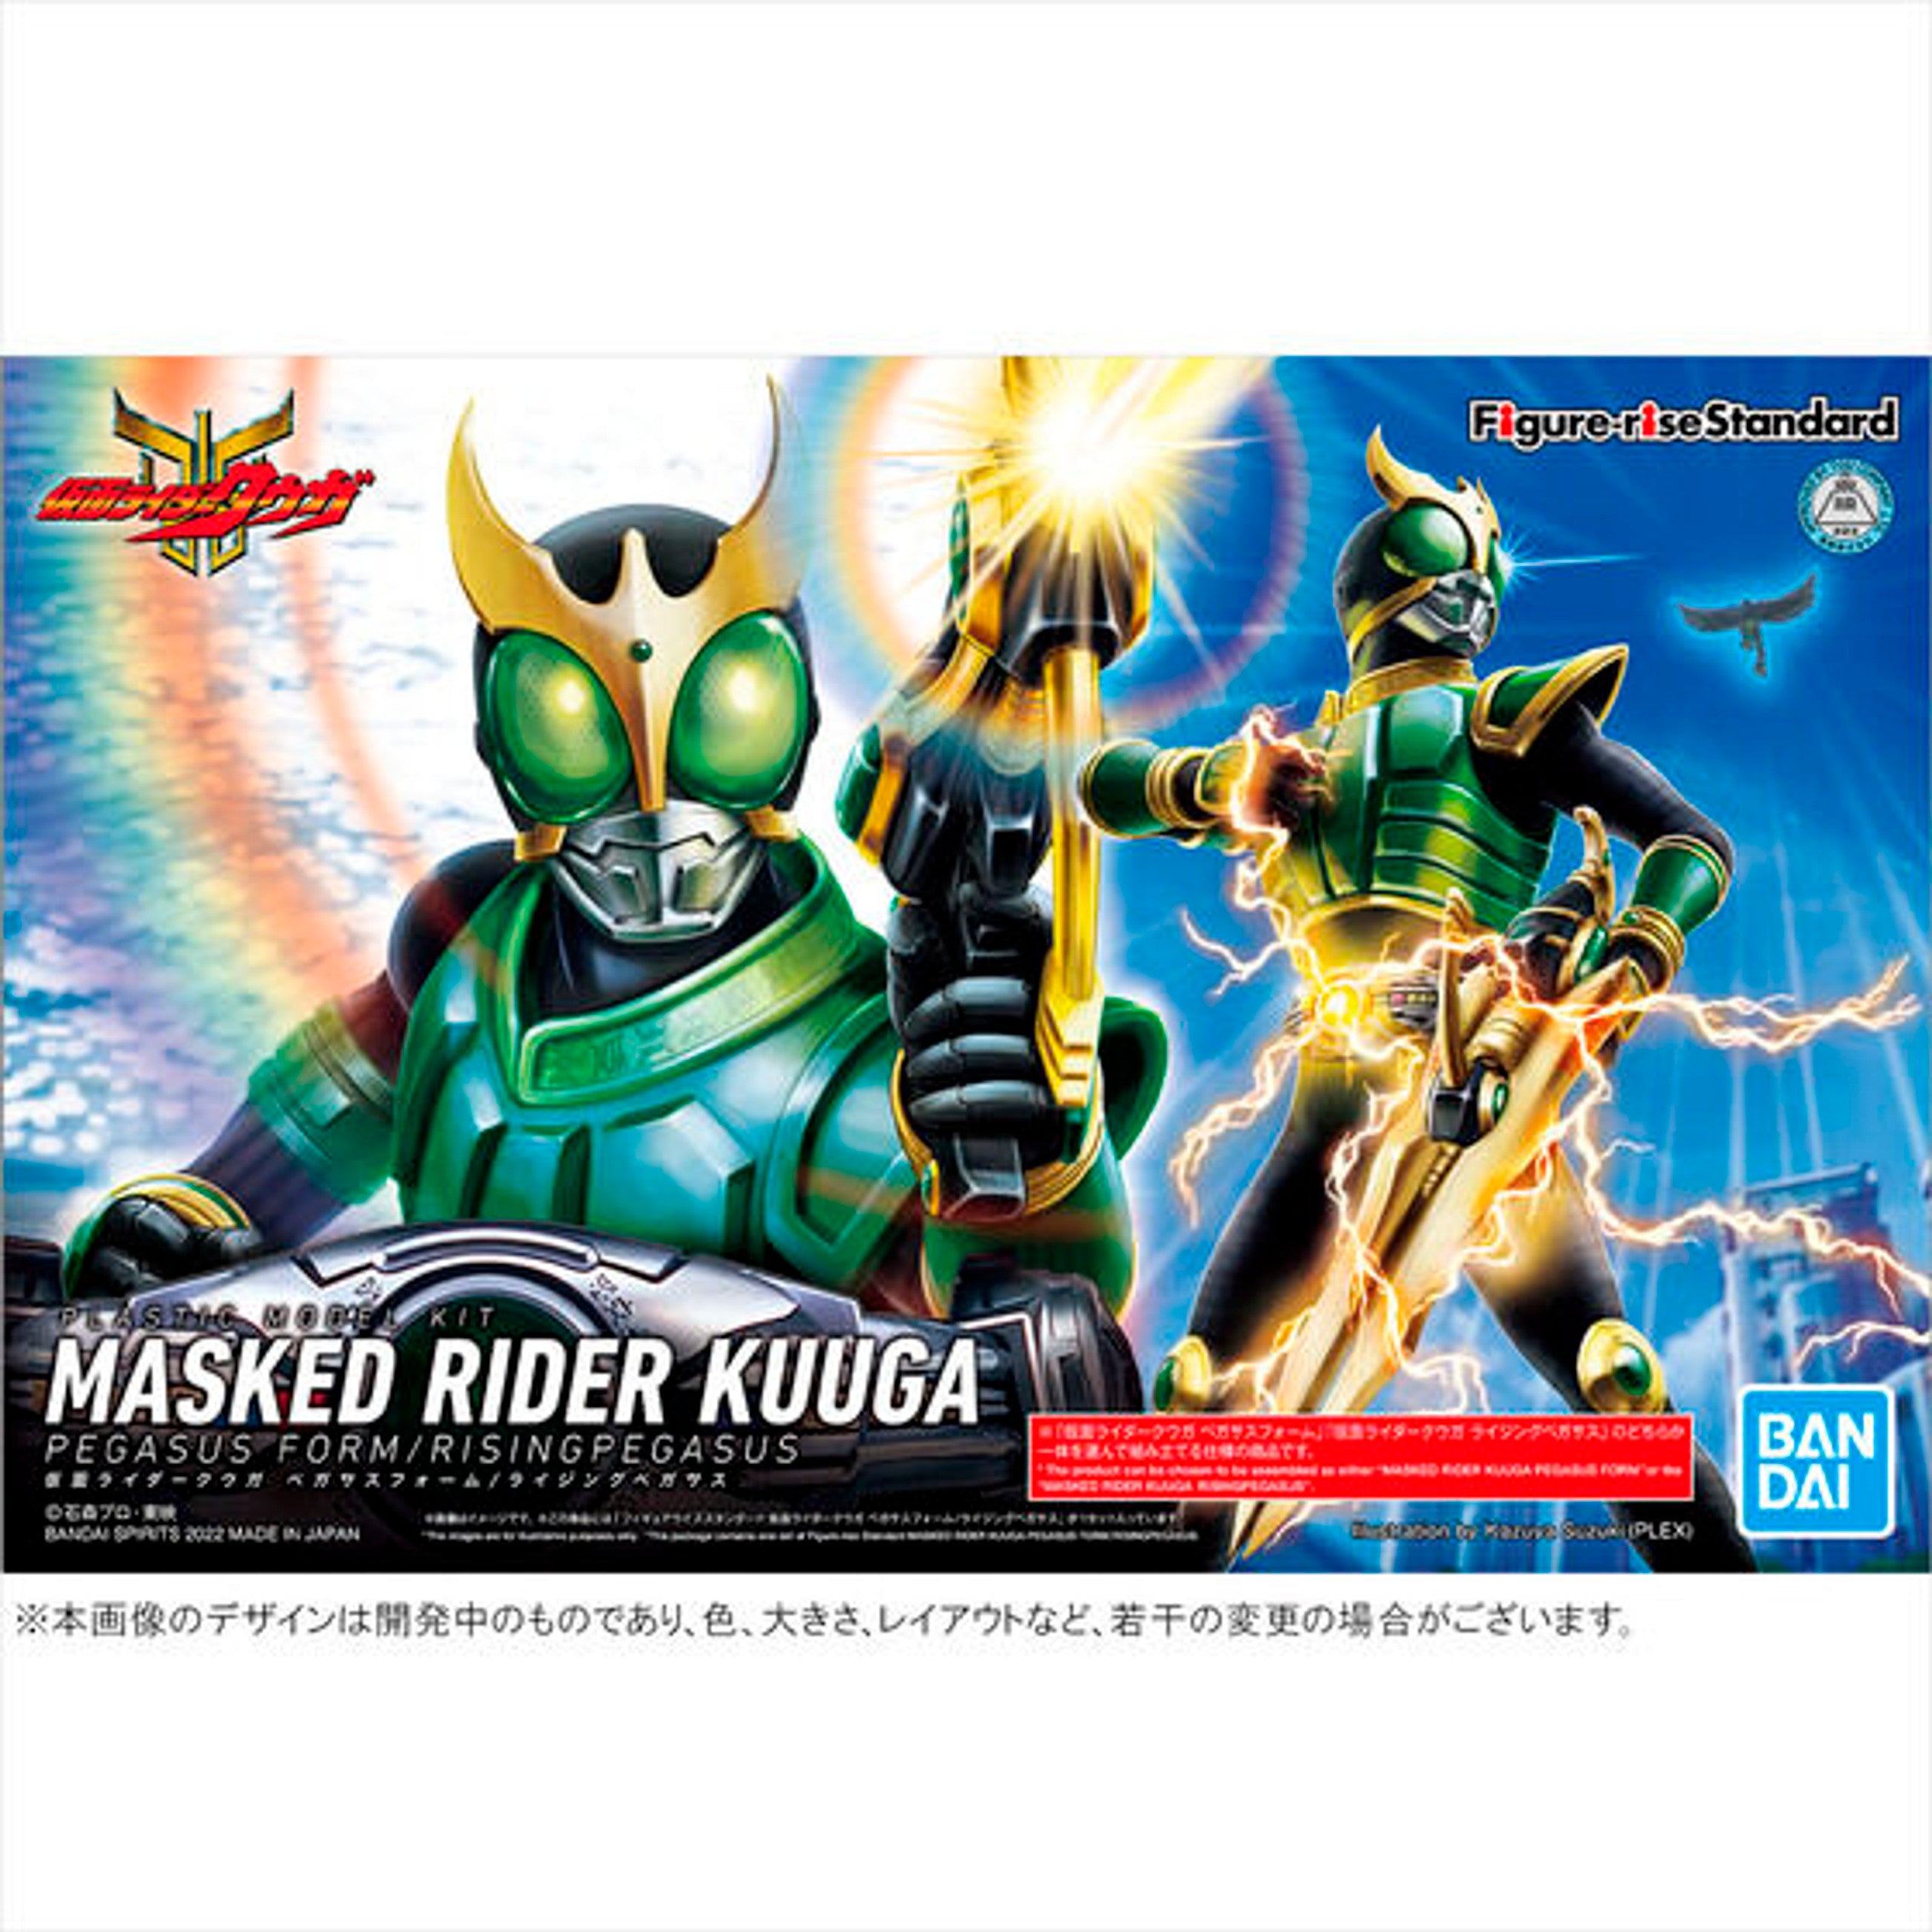 Figure-rise Standard Masked Rider Kuuga Pegasus Form / Rising Pegasus